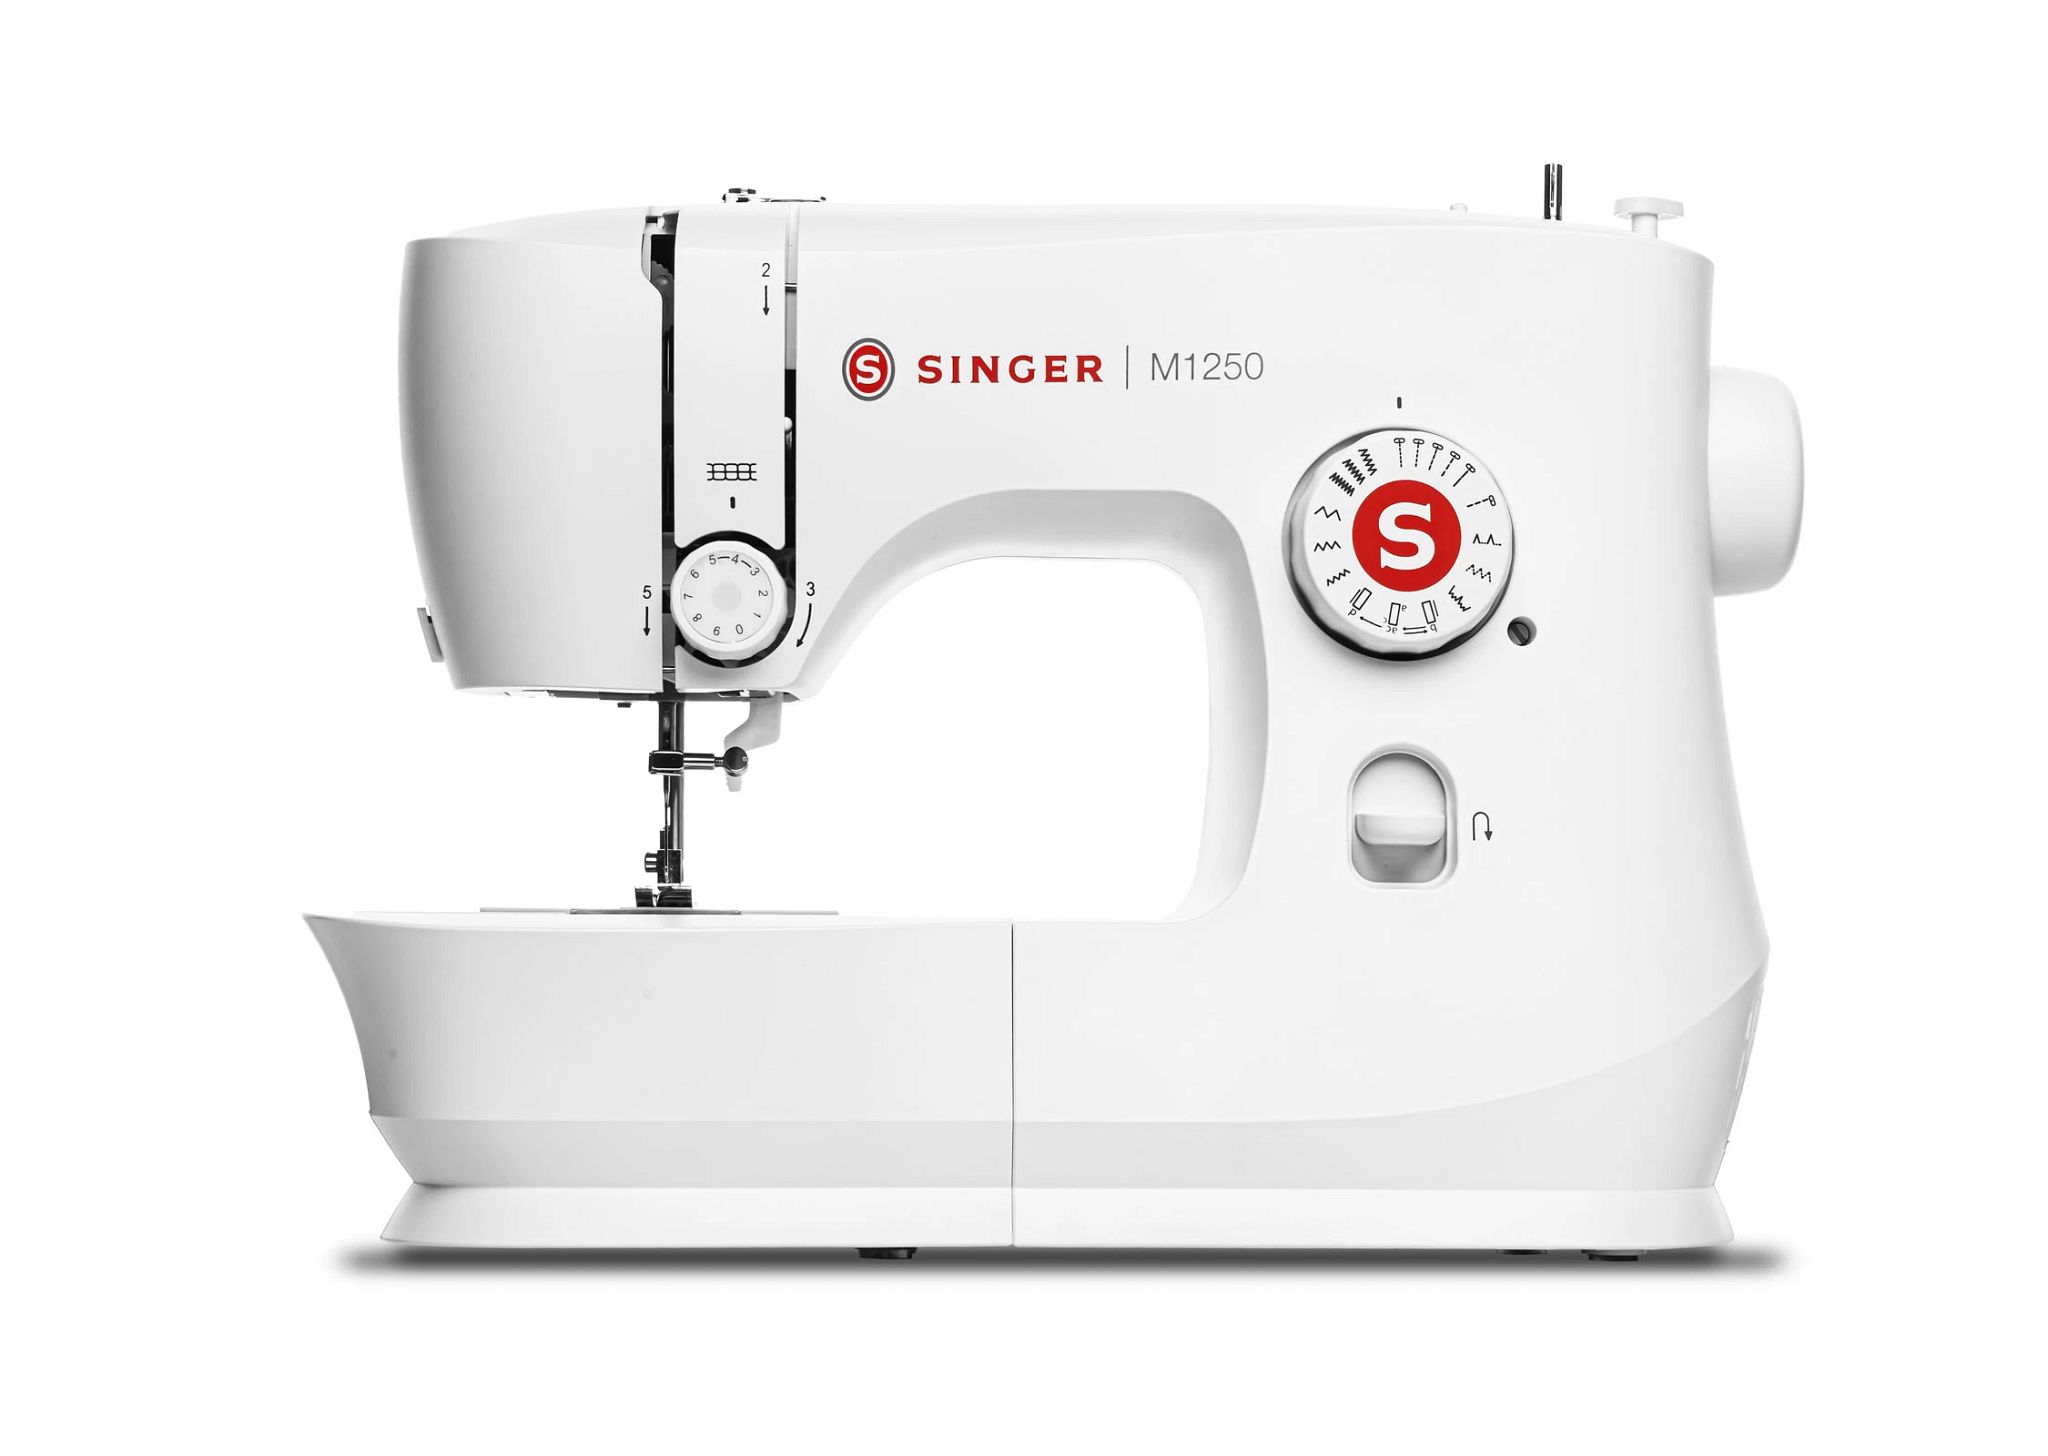 M1250 singer sewing machine